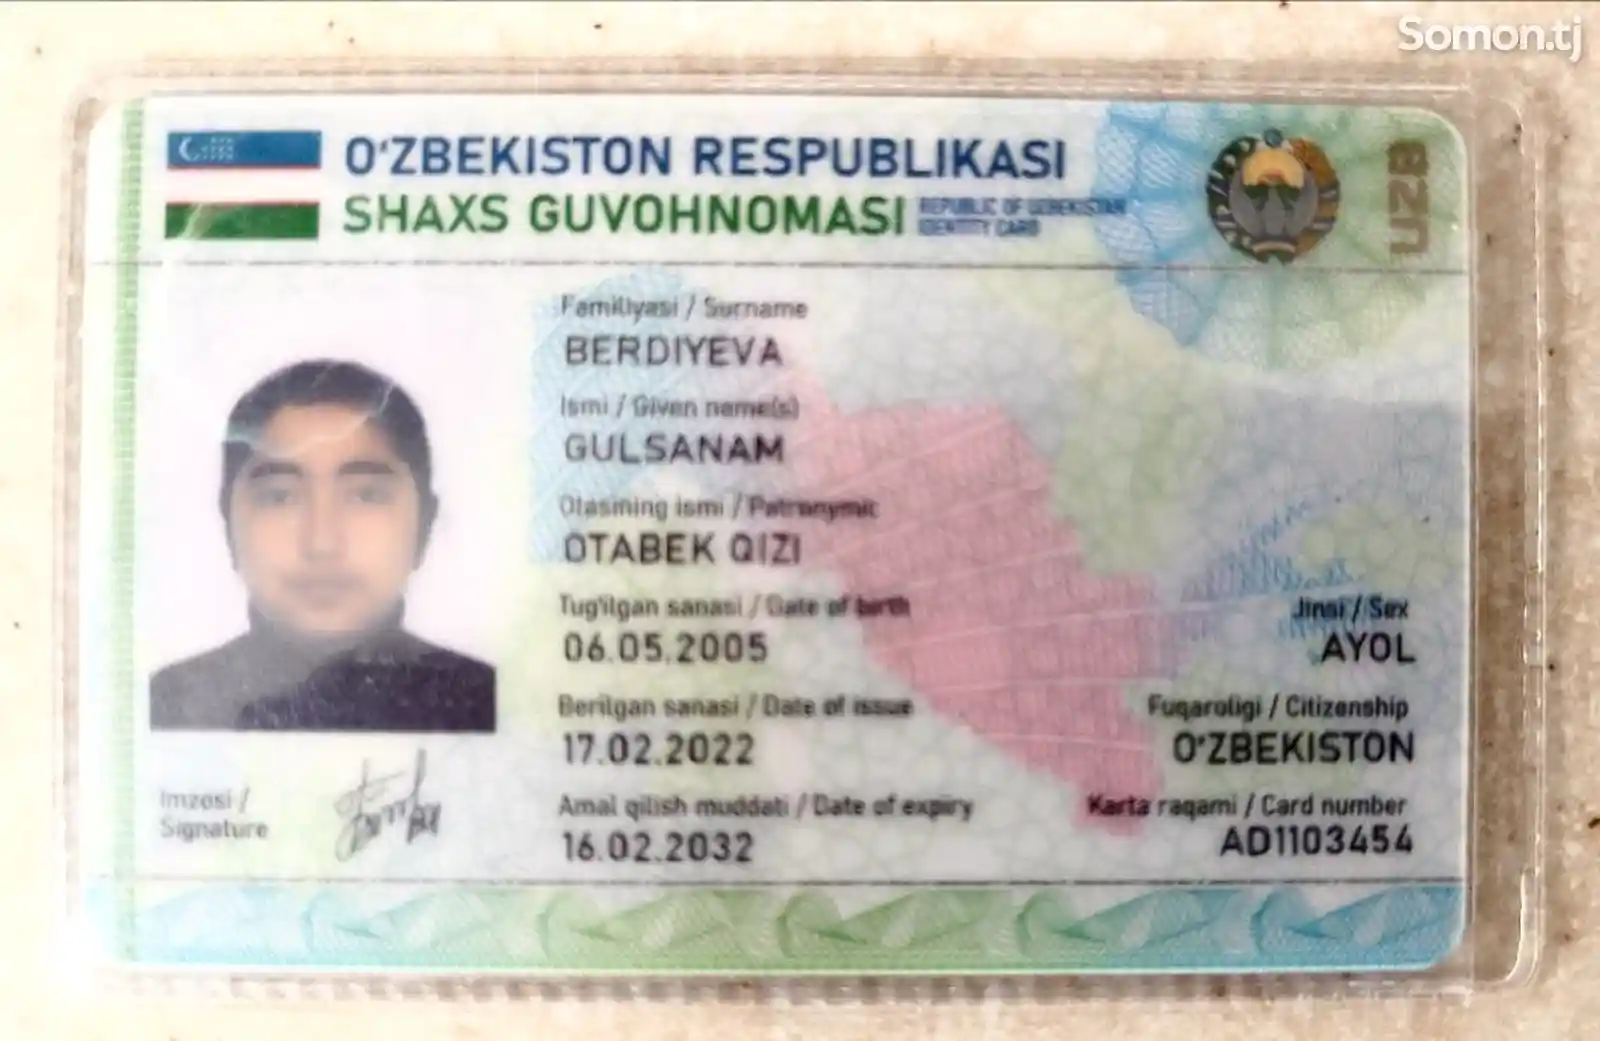 Найден паспорт Бердиева Гулсанам